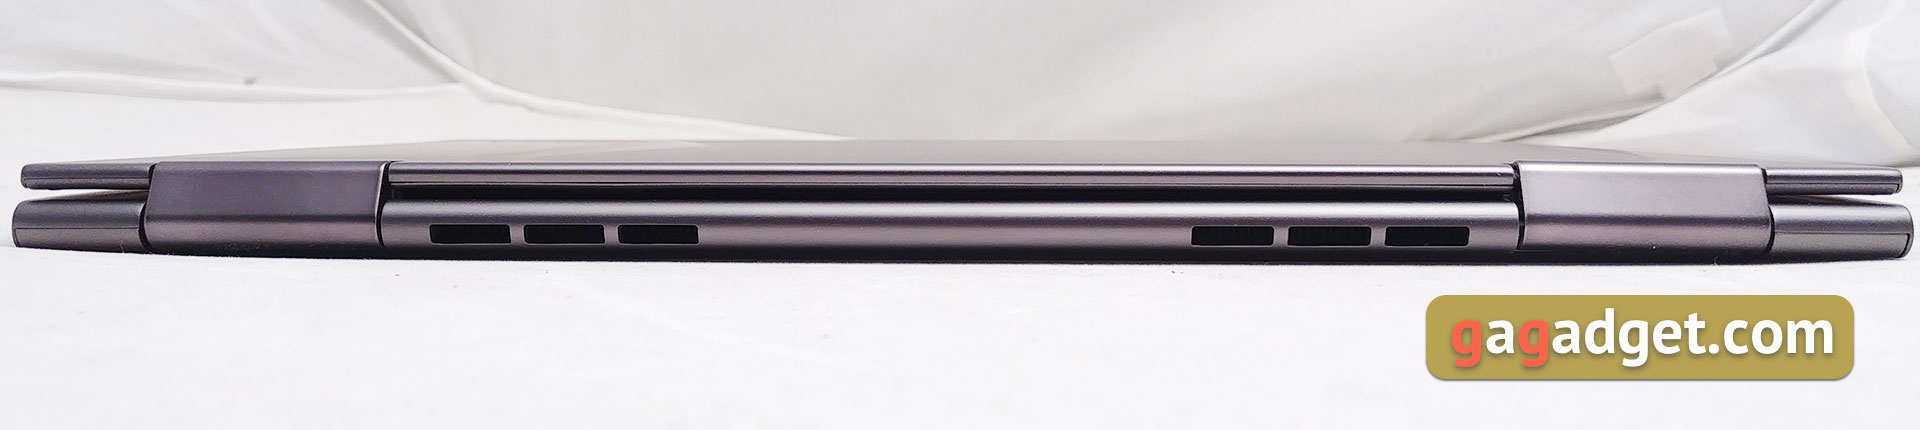 Обзор Lenovo YOGA 730-13: универсальный ультрапортативный ноутбук-трансформер-8